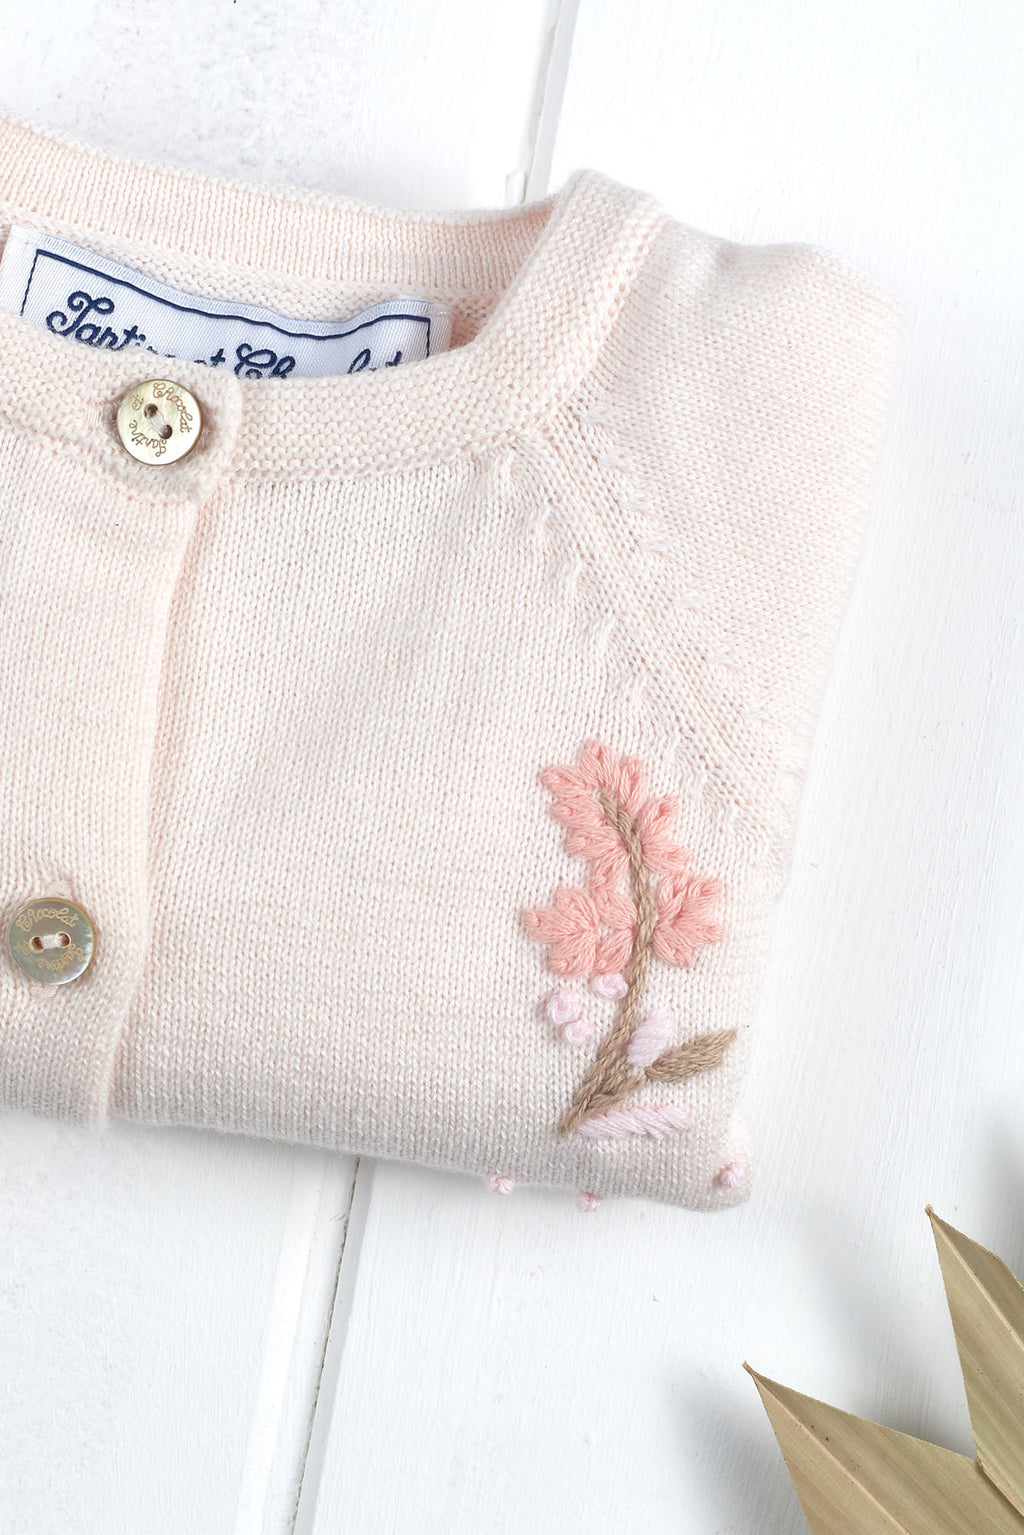 Cardigan - Tricot Coton rose pâle broderies fleurs